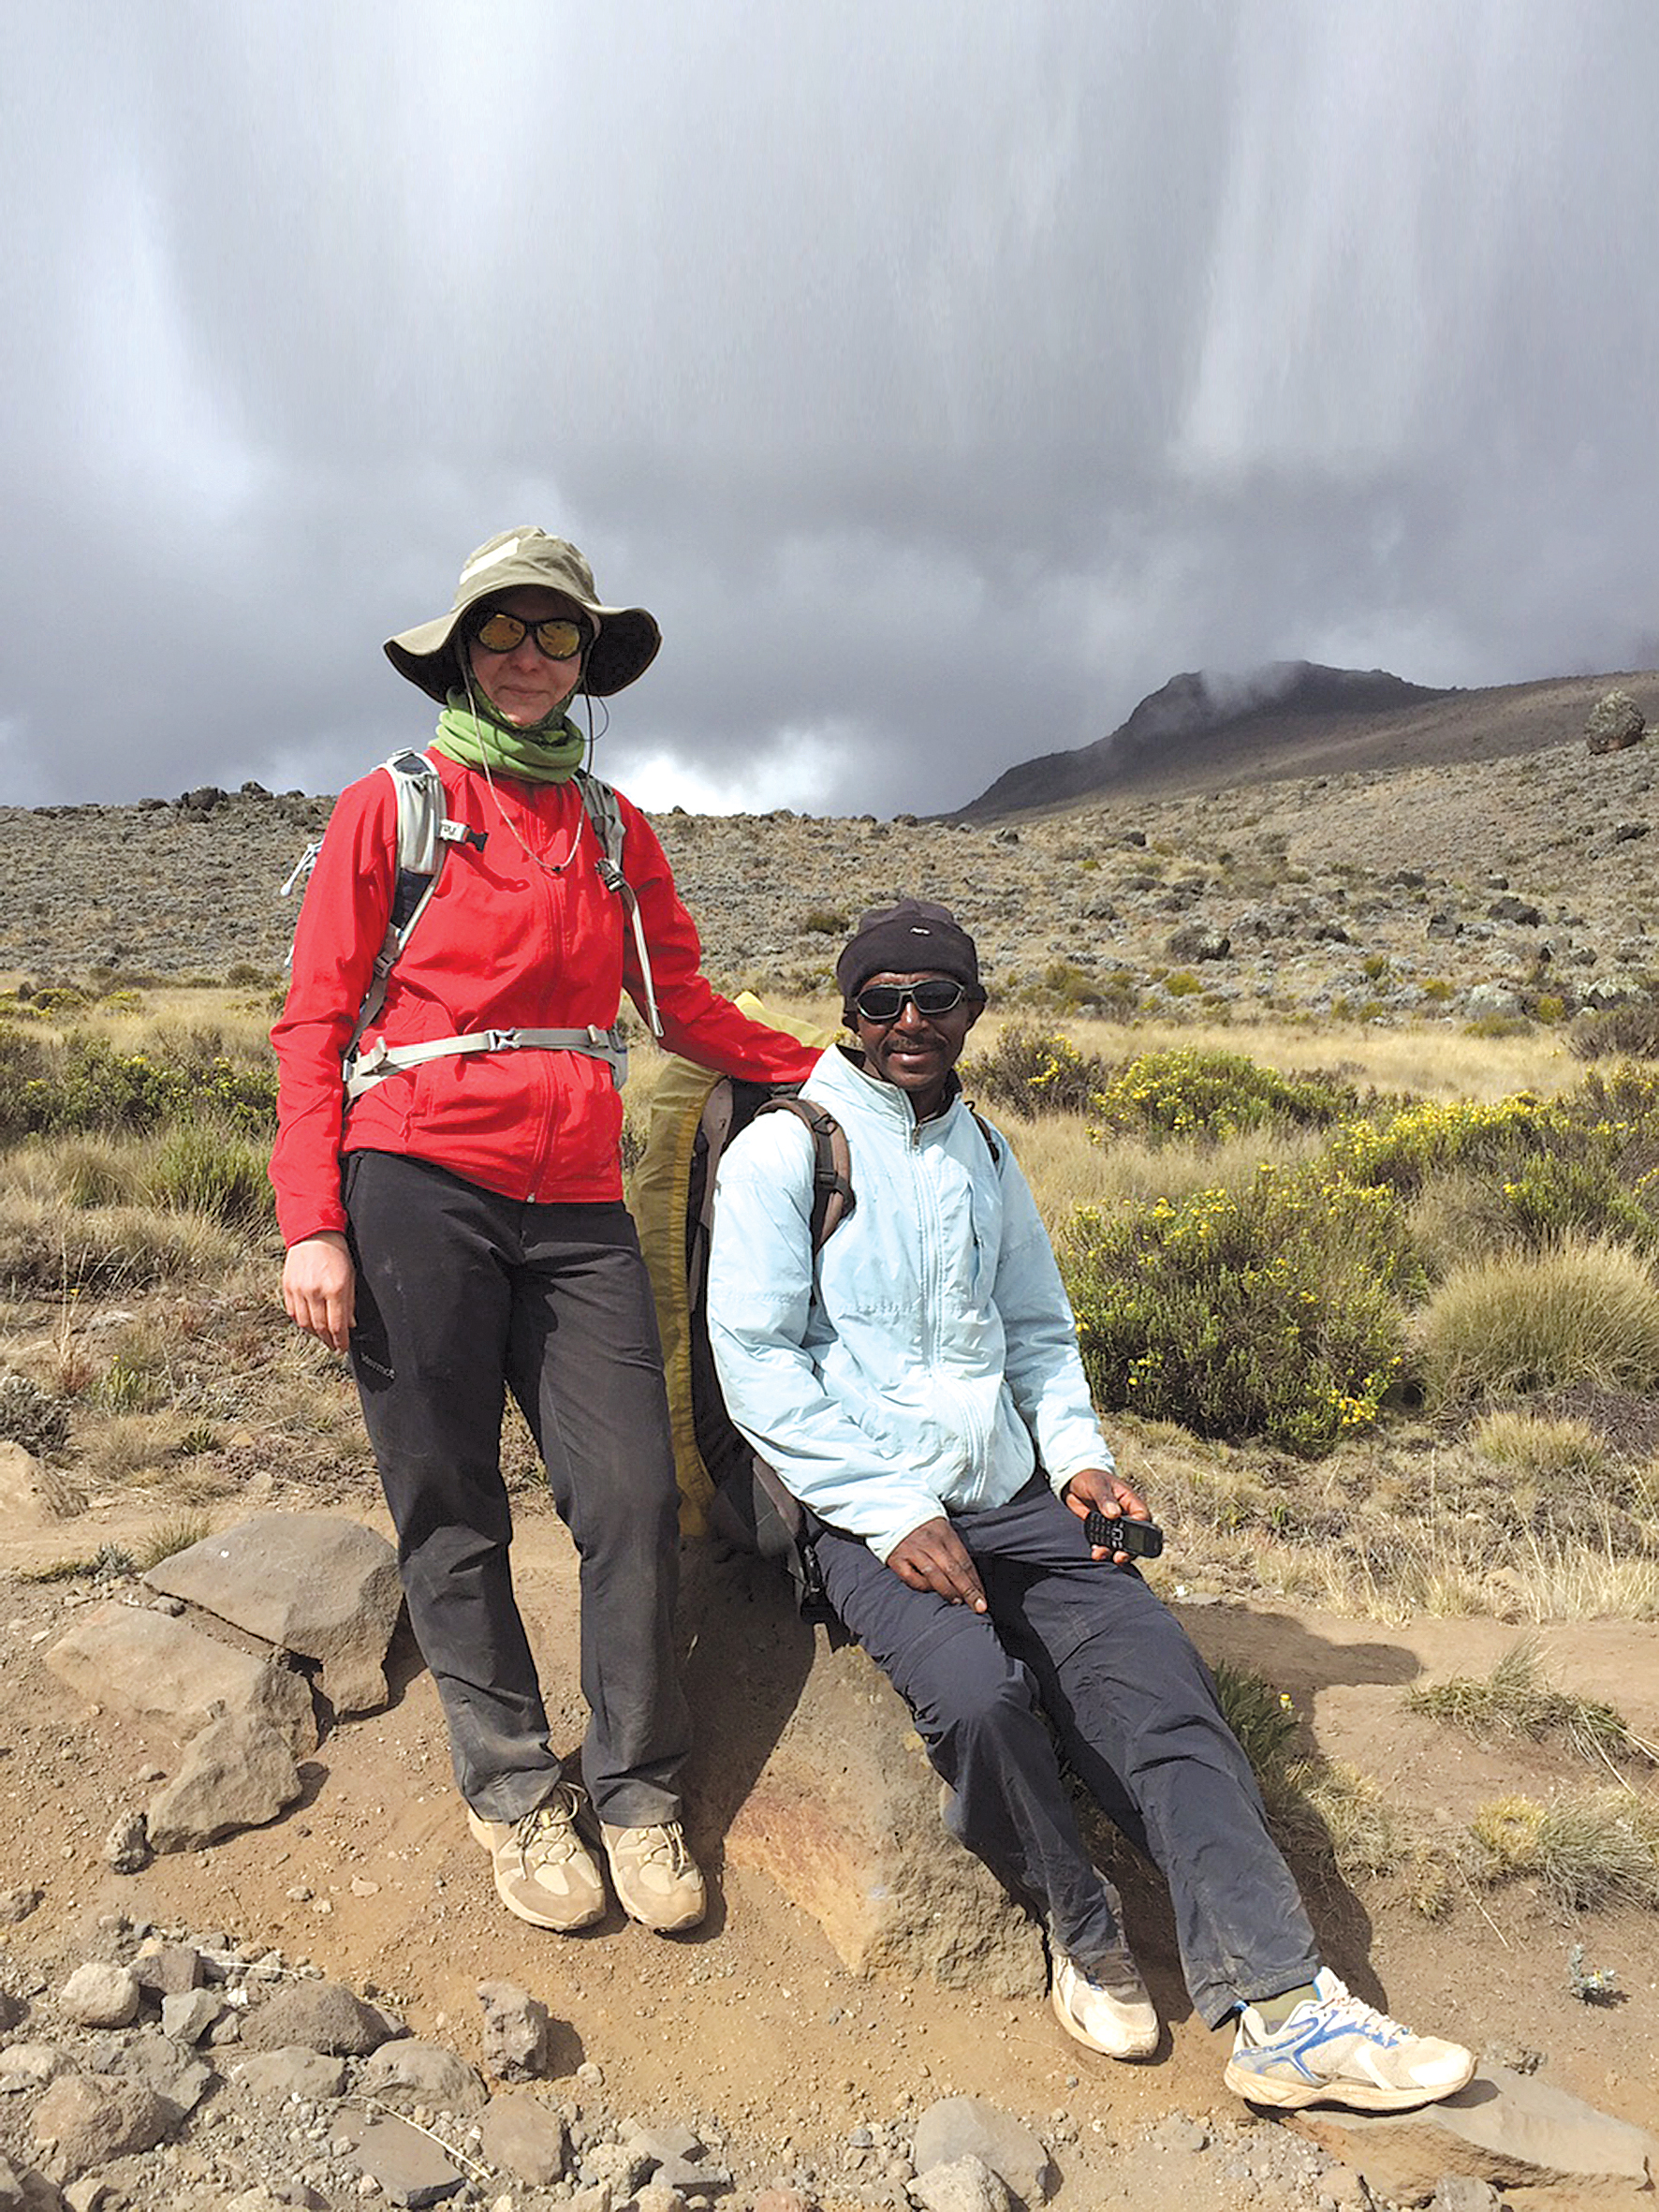 Dr. Anžela Pavloviča šogad  uzkāpa Kilimandžaro.  Fizisks un mentāls pārbaudījums,  kam viņa gatavojās pusgadu